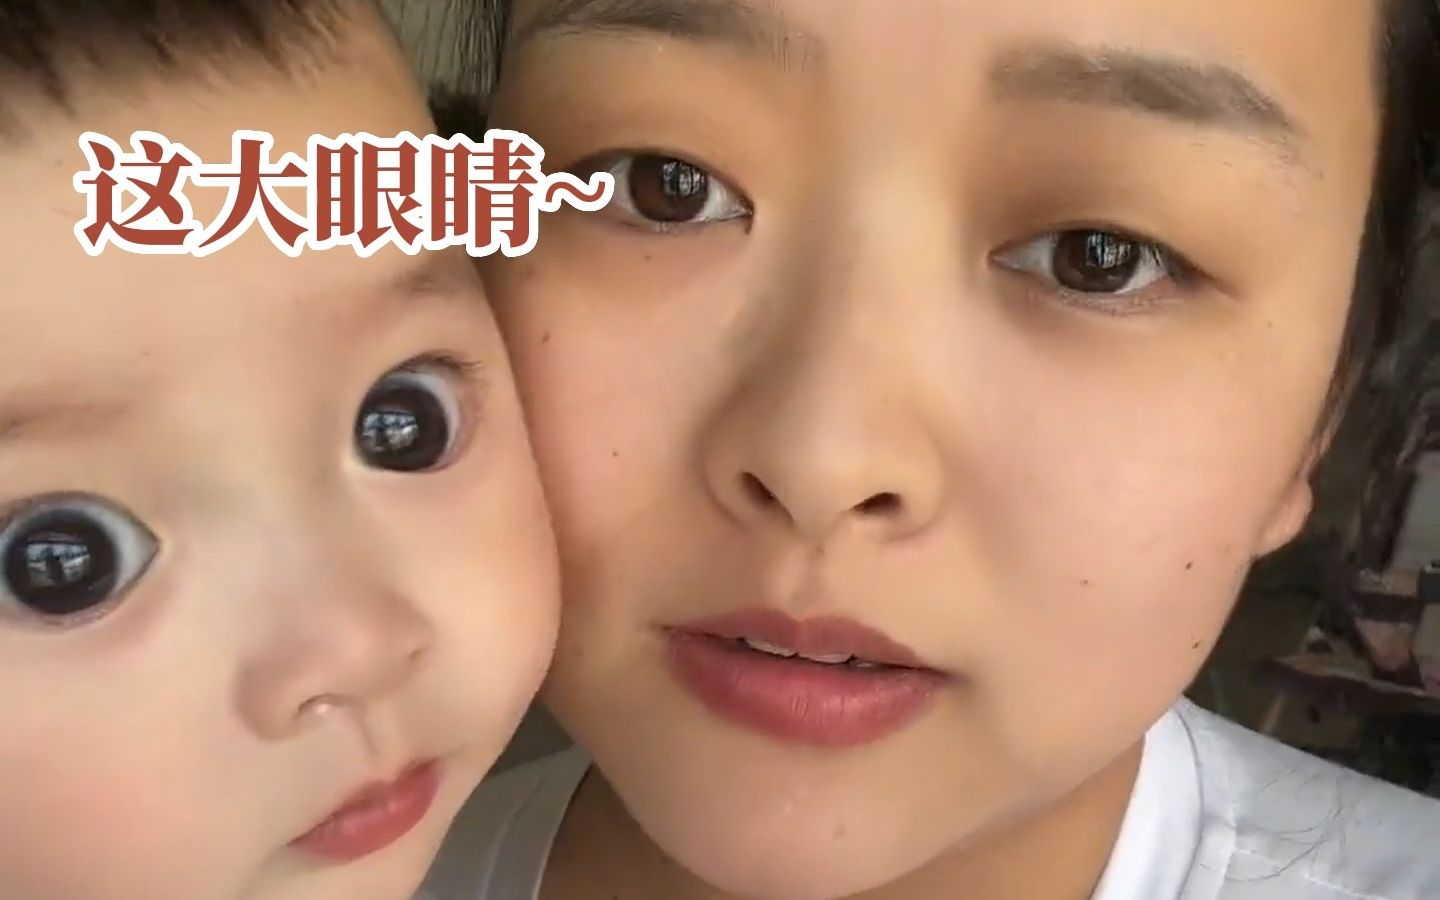 5月24日，河北沧州。宝妈晒娃被质疑孩子眼睛大不正常，妈妈：医生说眼睛没问题，但还有人说查得不对。